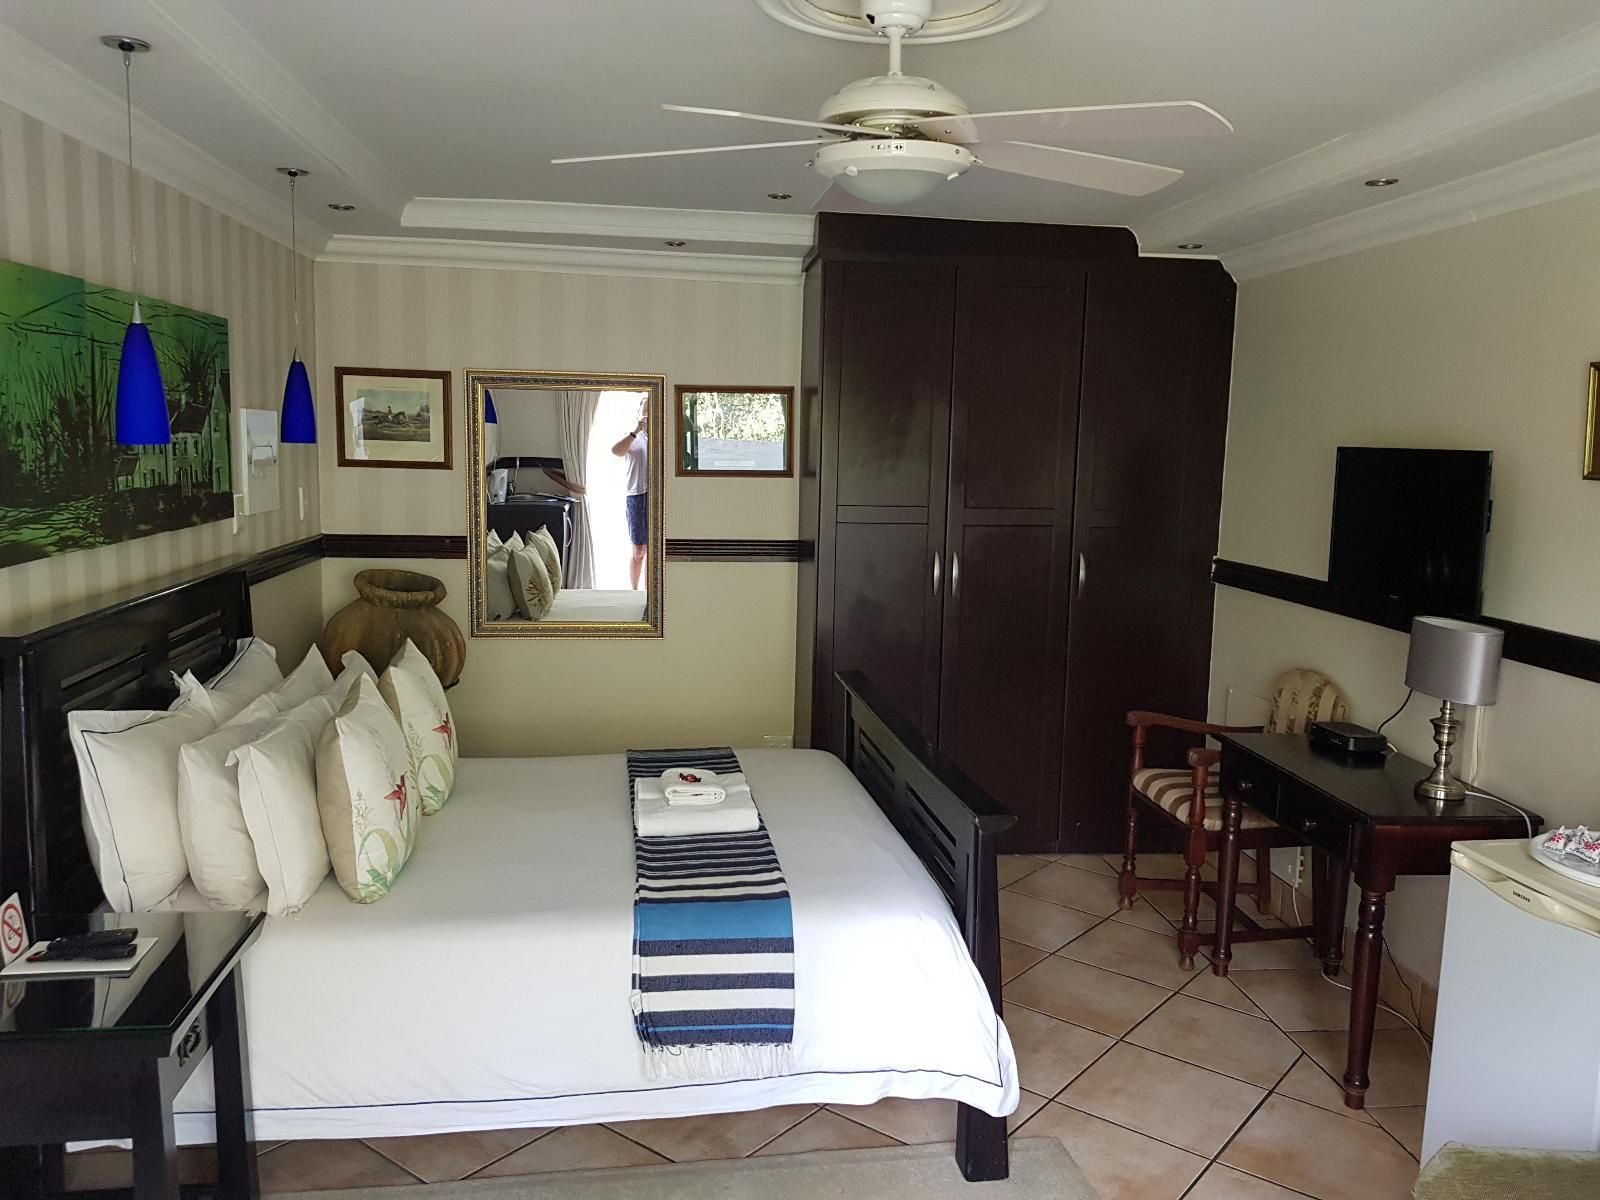 Pheasant Hill Guest House Irene Centurion Gauteng South Africa Bedroom